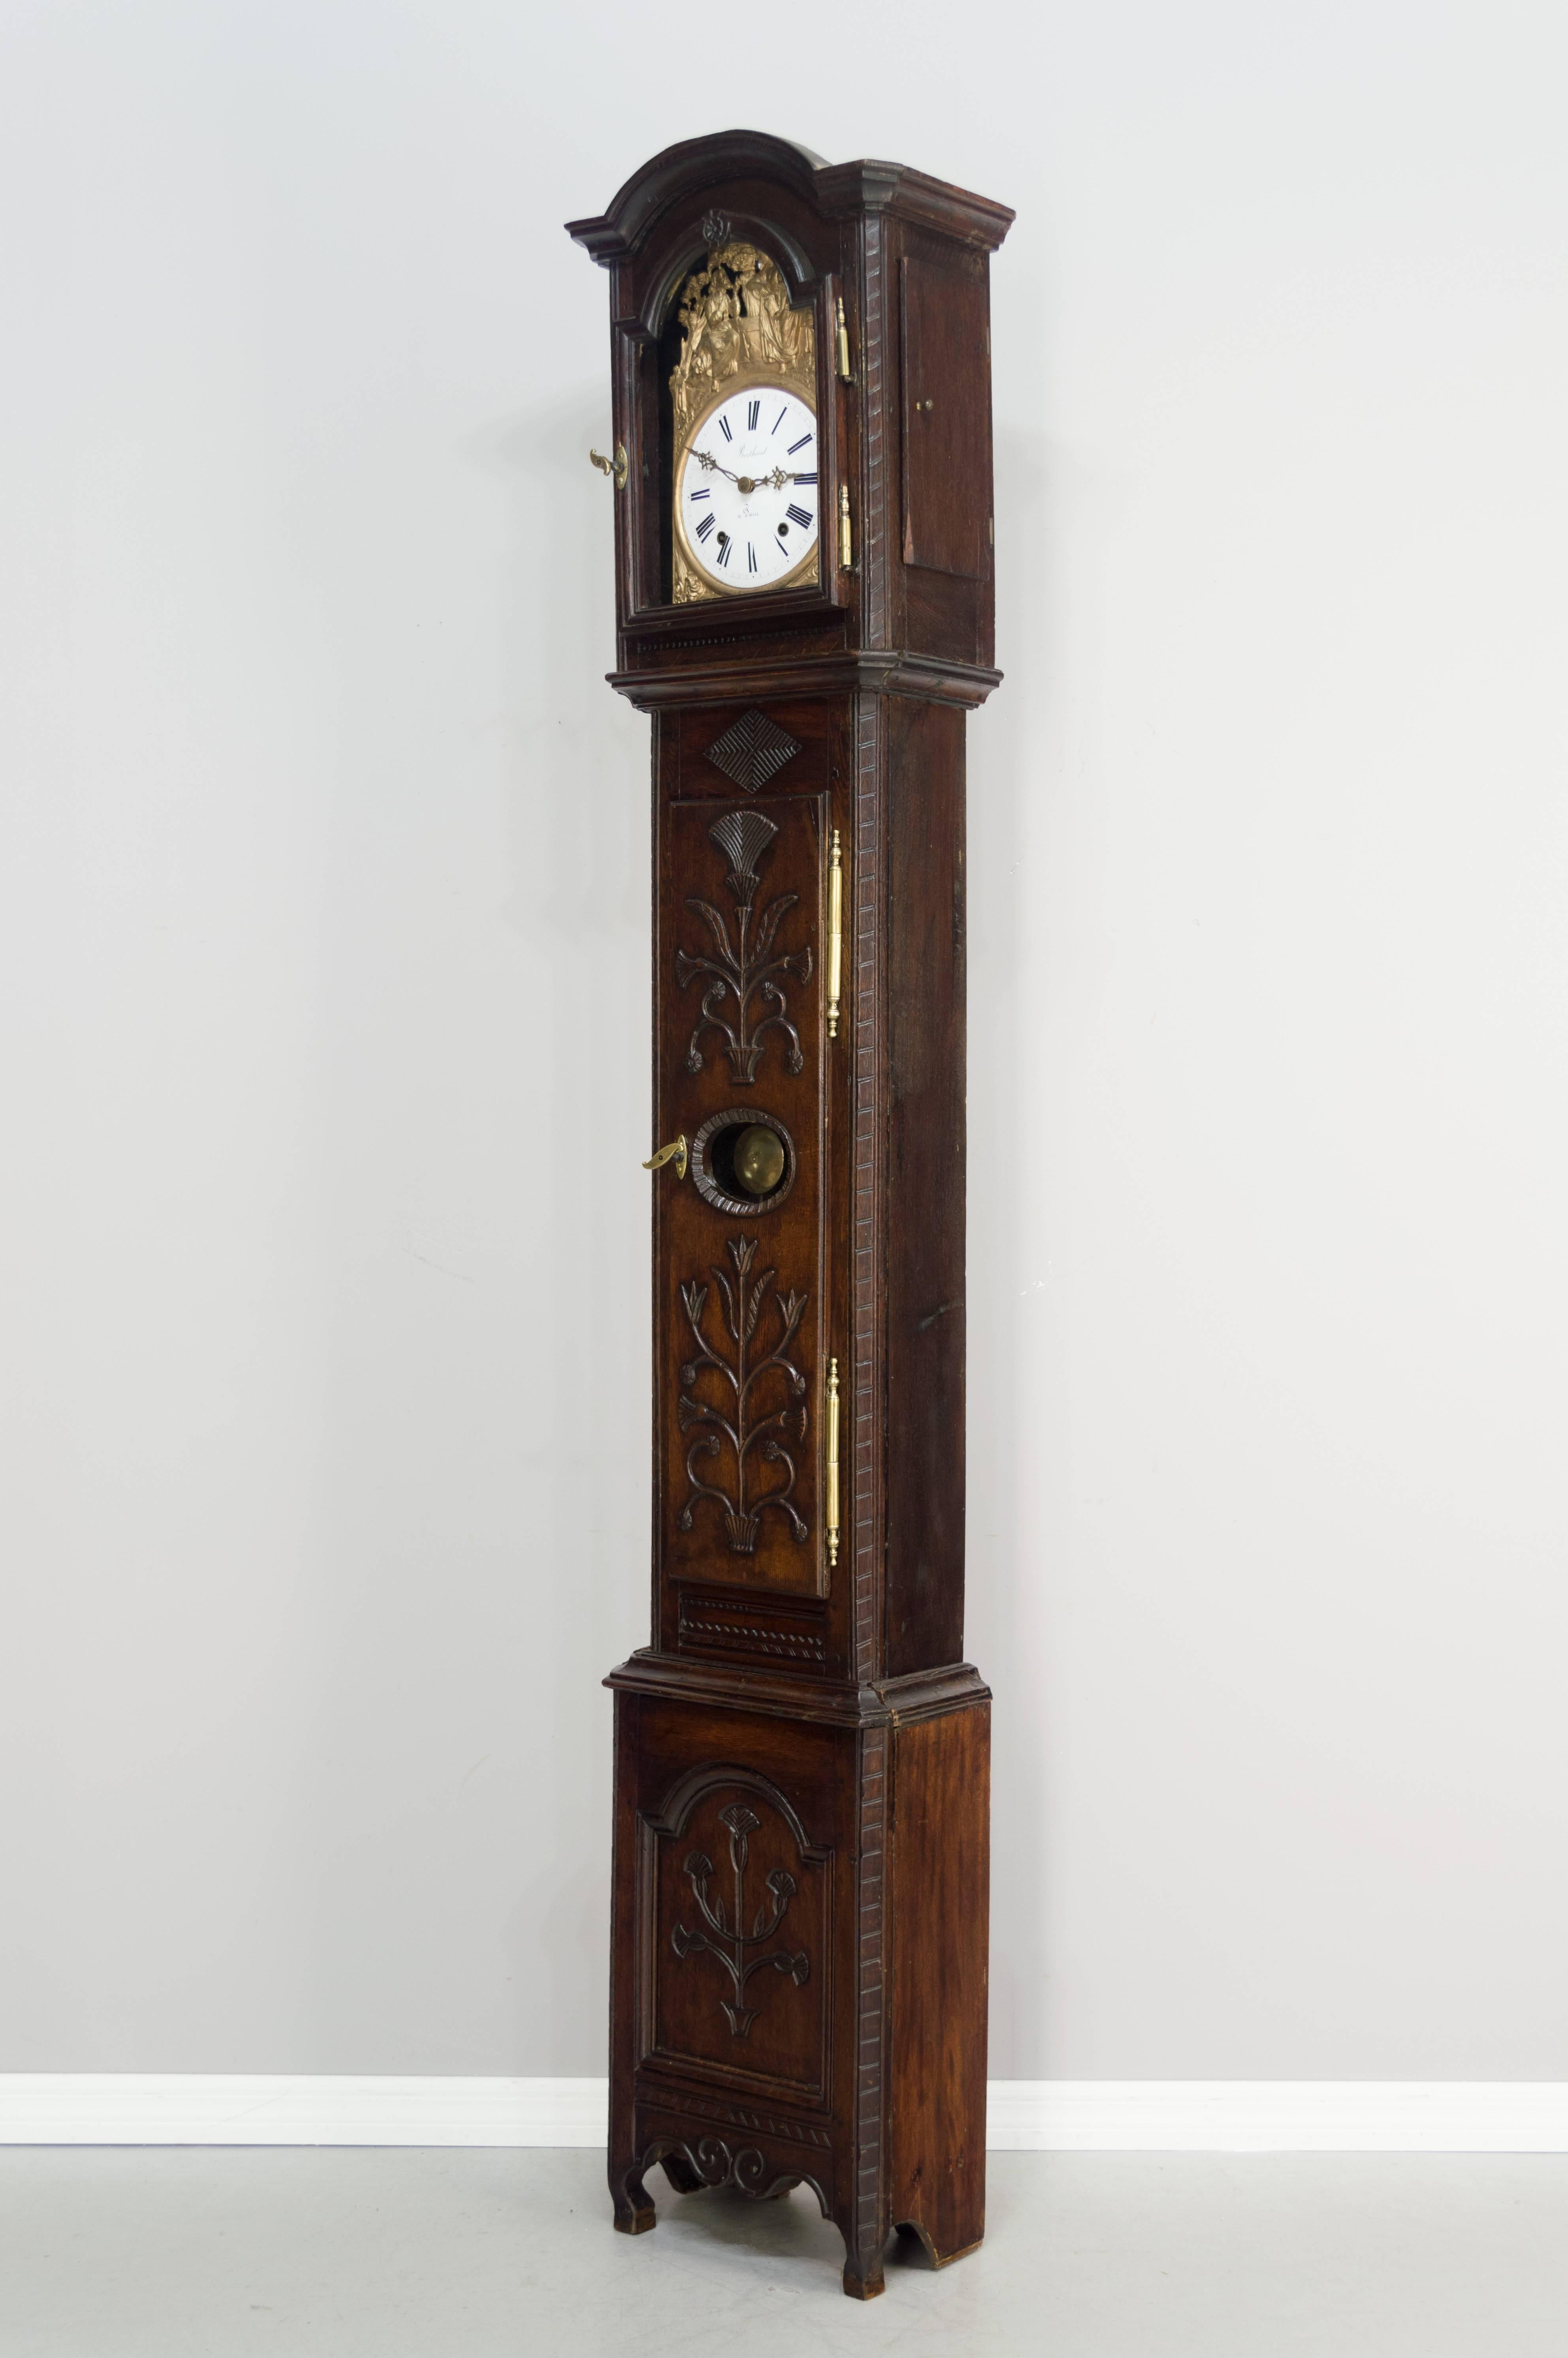 Une bonne horloge du 18ème siècle à grand boîtier avec un mouvement Morbier plus tardif en état de marche. Le coffret est en chêne avec des sculptures florales et des ferrures d'origine en laiton:: et présente une patine cirée. Les vitres sont